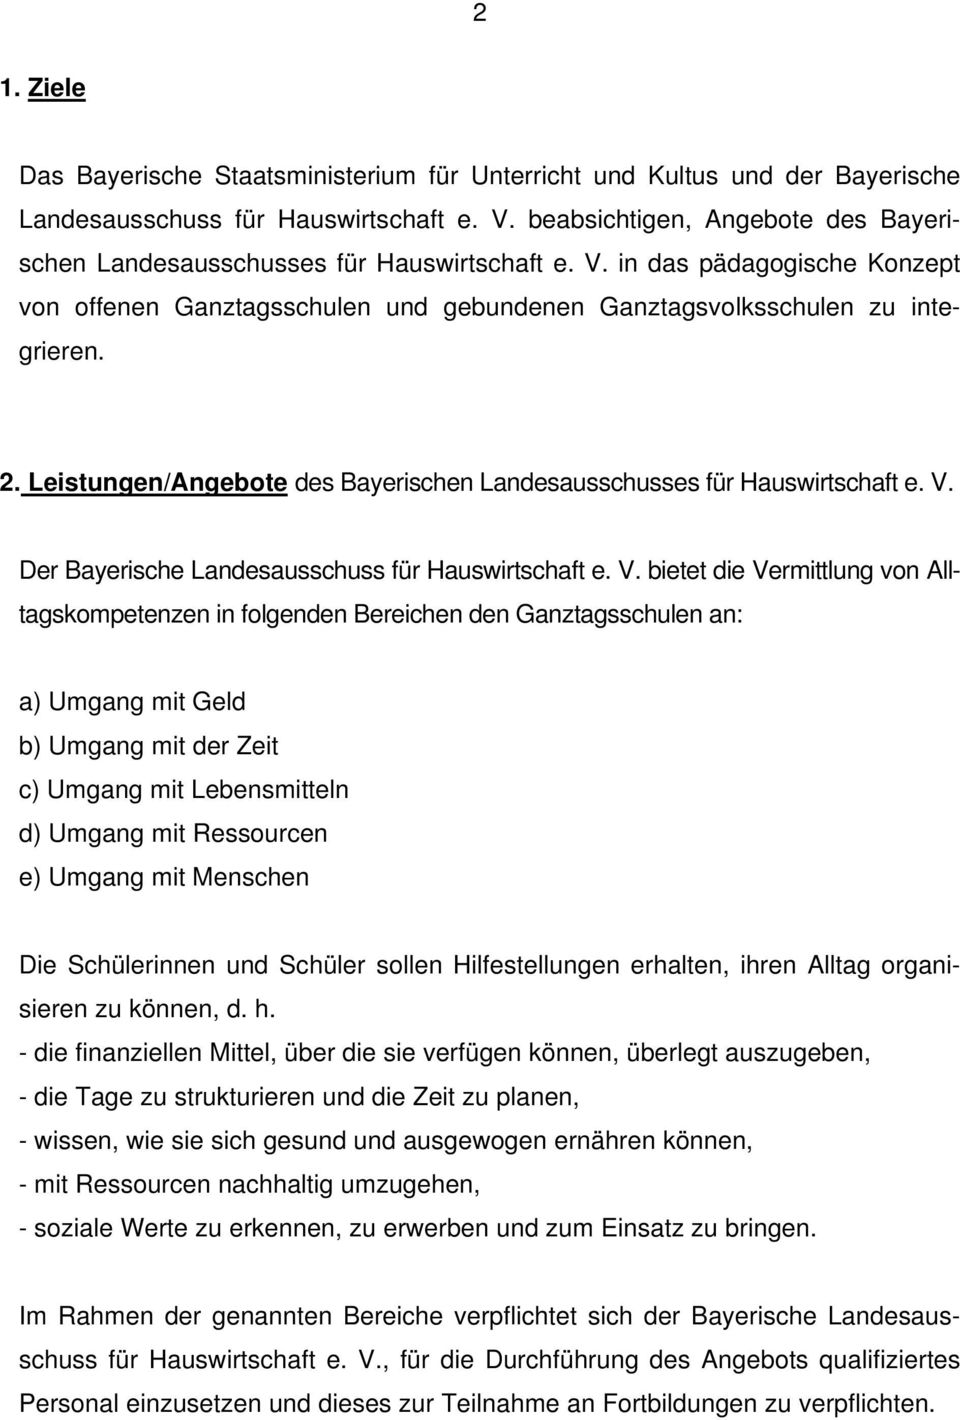 Leistungen/Angebote des Bayerischen Landesausschusses für Hauswirtschaft e. V.